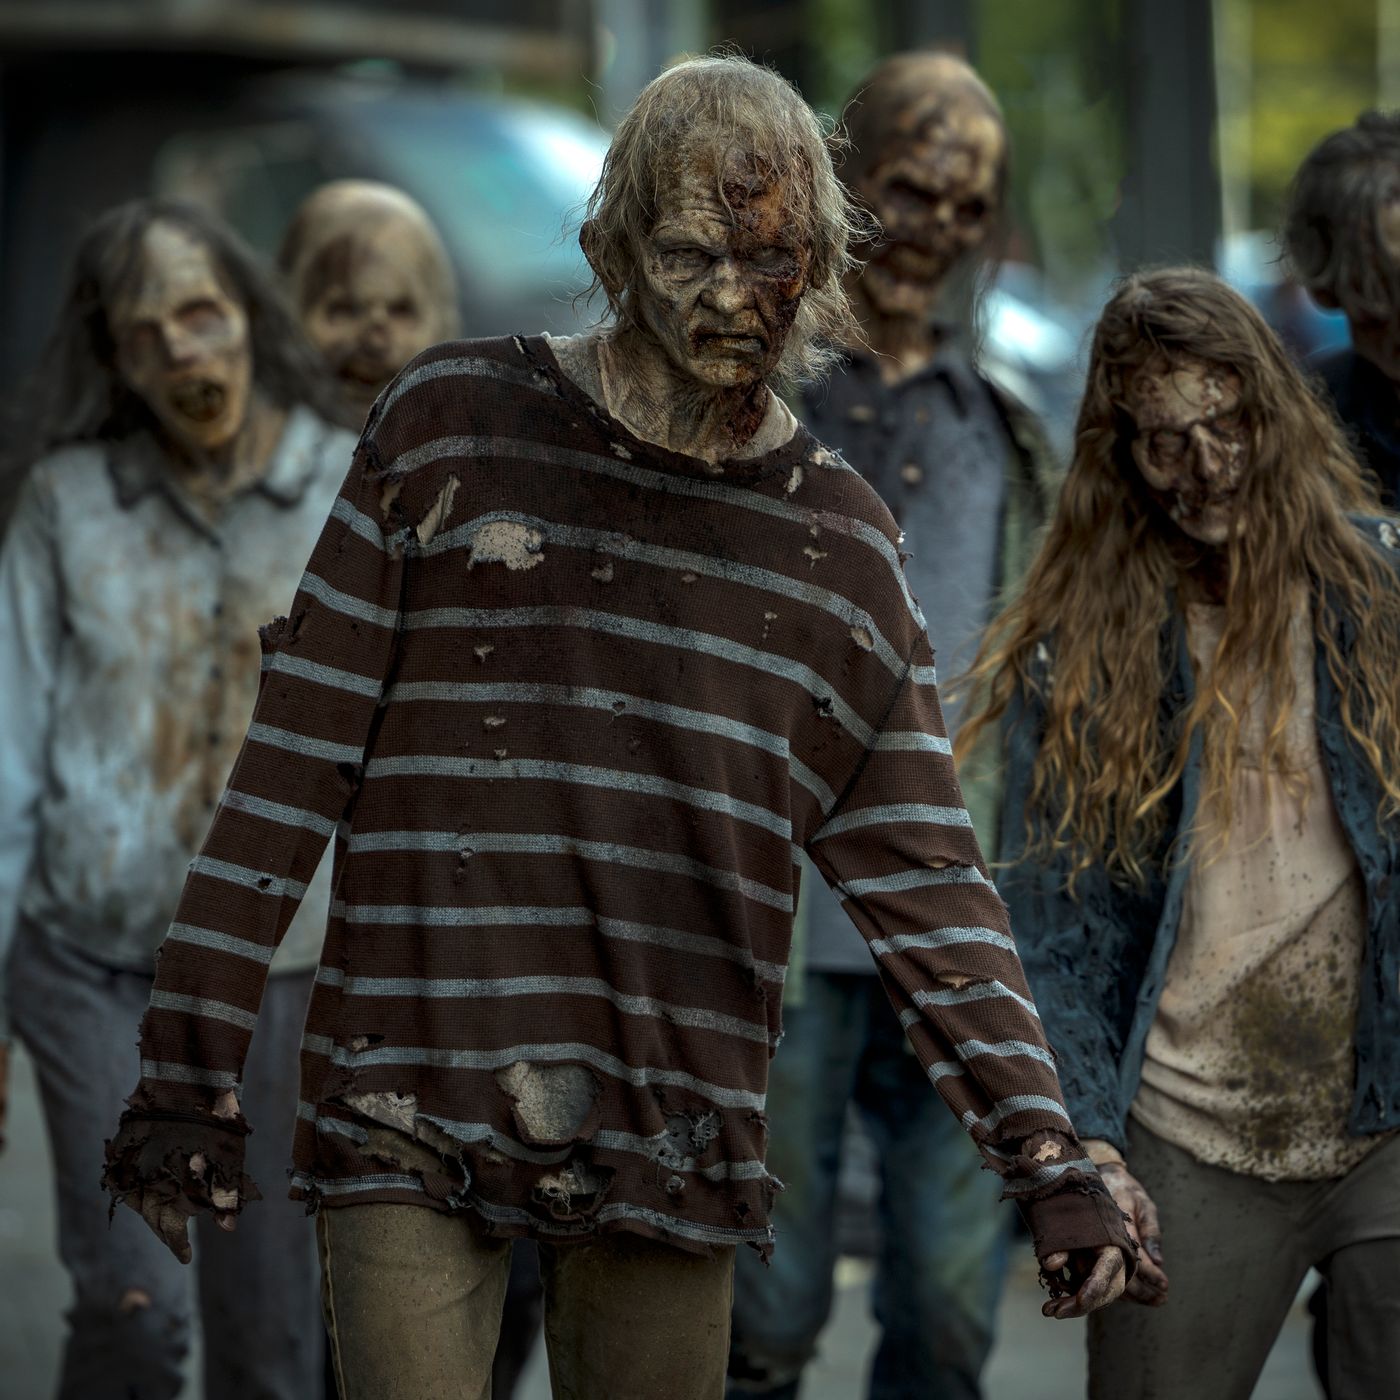 The Walking Dead: Dead City Season 1 - episodes streaming online